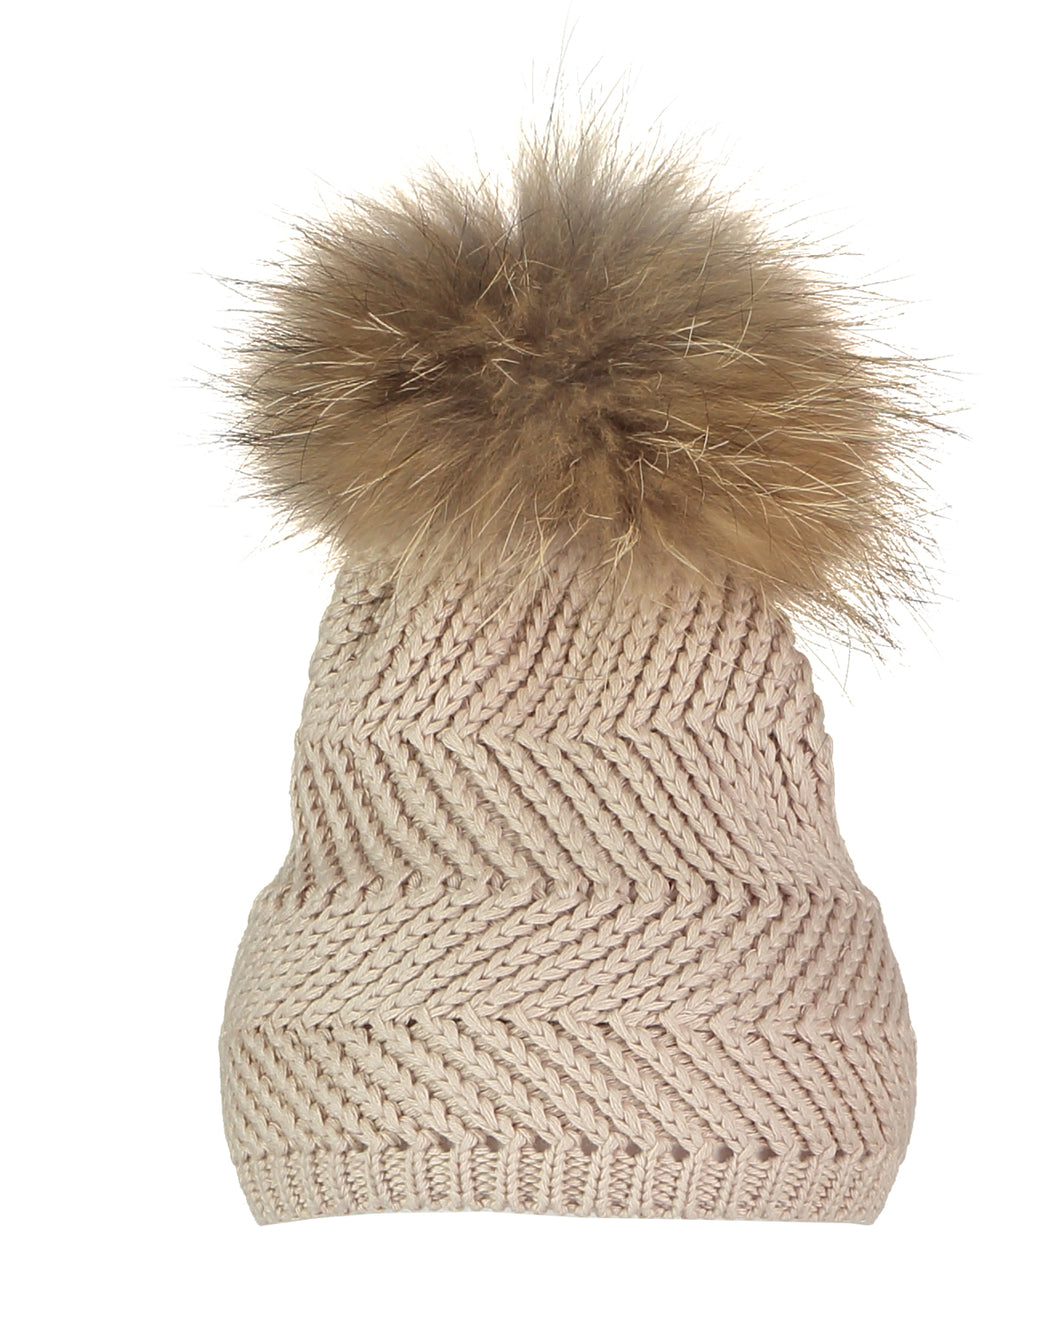 Cotton Zigzag Hat by Bowtique London